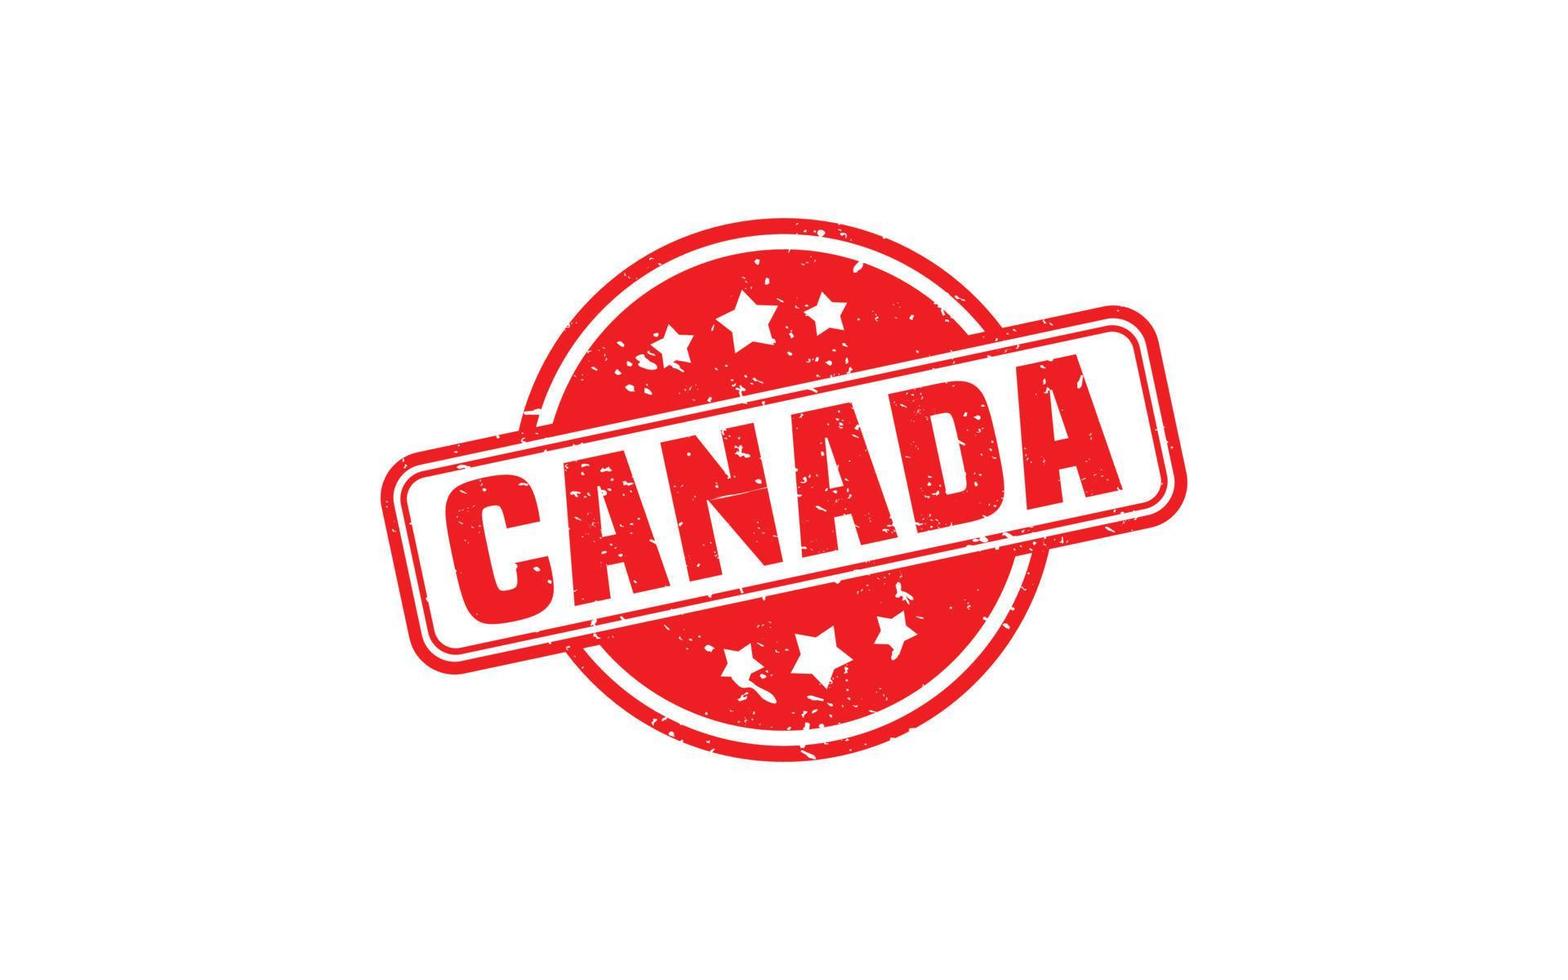 Canadá sello de caucho con estilo grunge sobre fondo blanco. vector